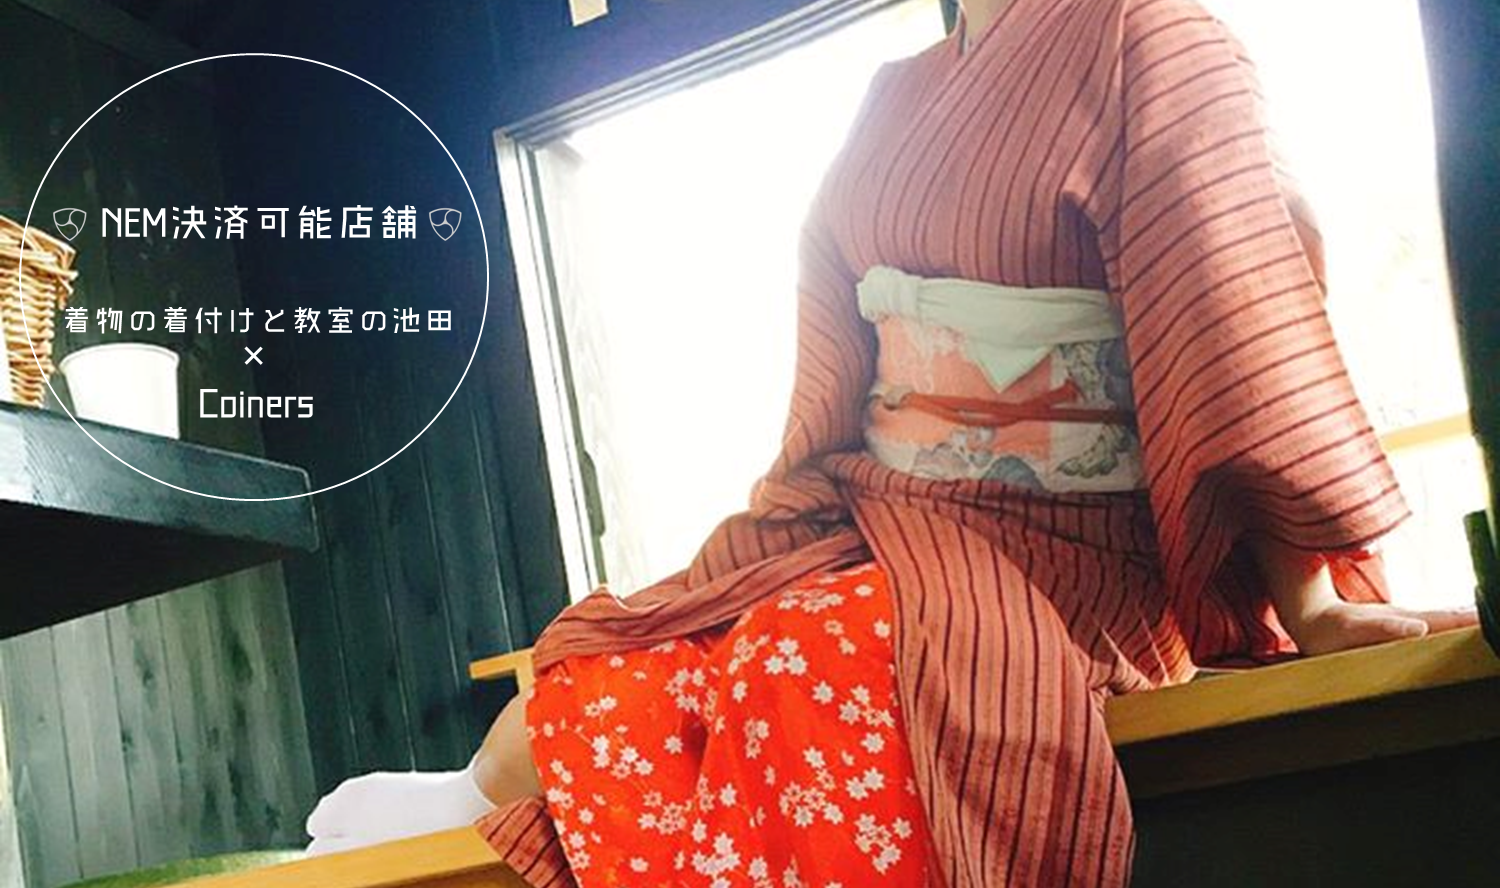 着物と着付けと教室の池田、池田知美さんのネム払い導入のインタビュー